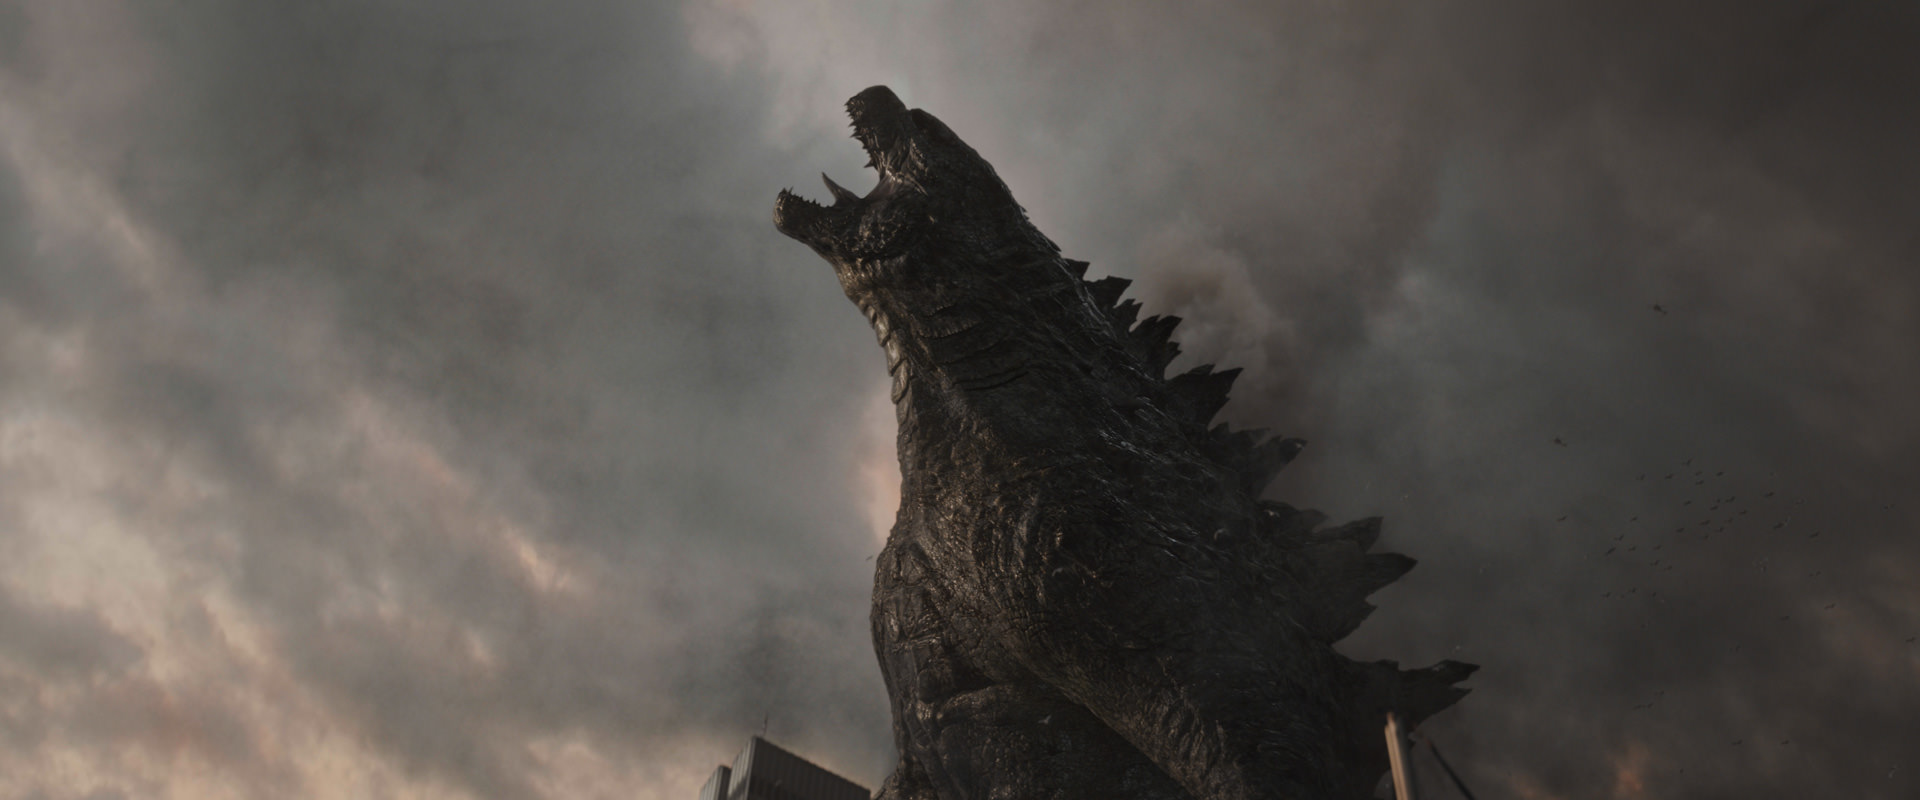 فیلم Godzilla Roars Godzilla 2014